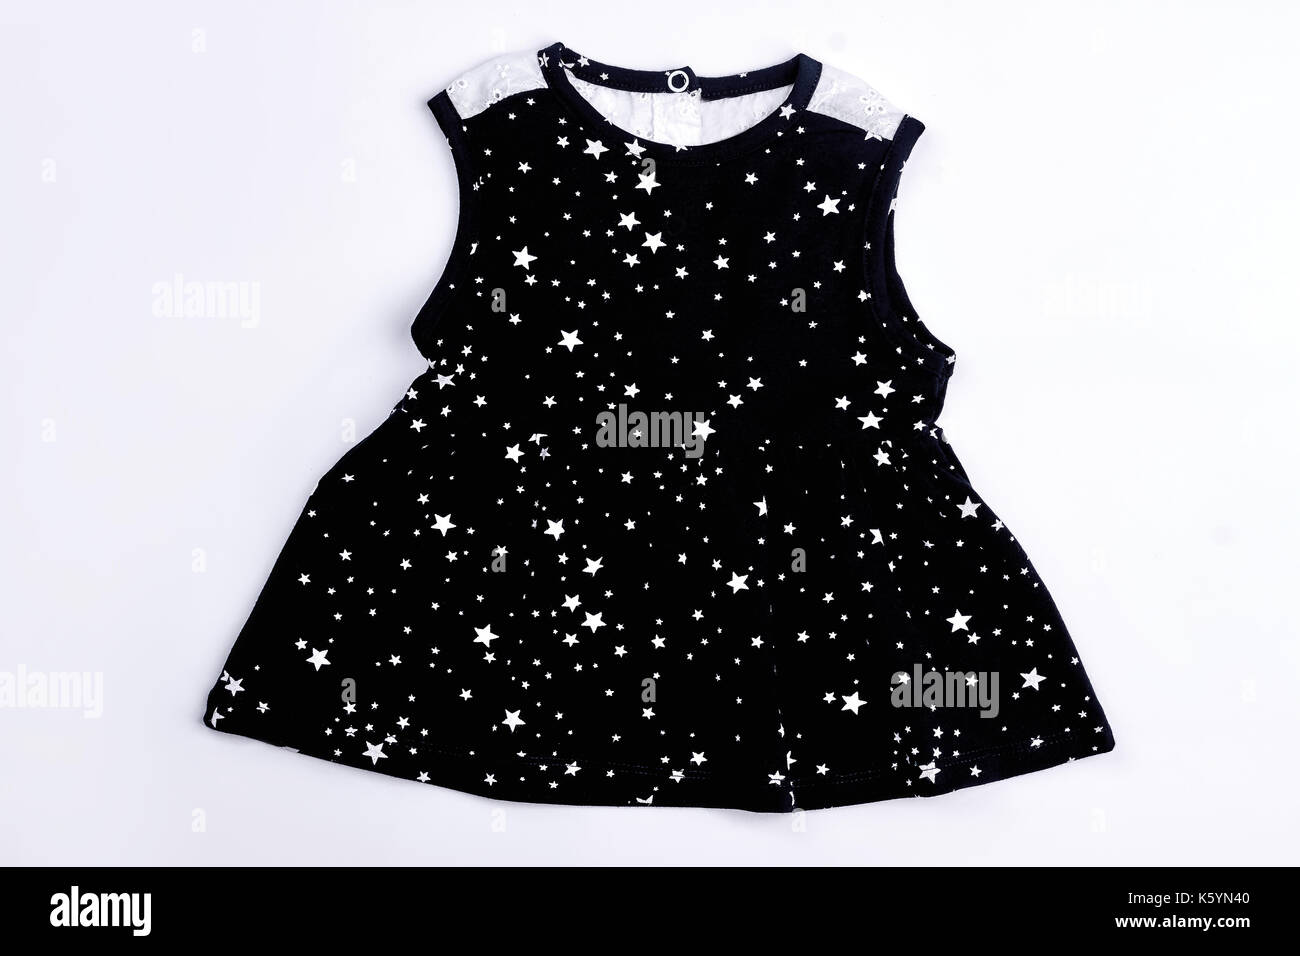 black dress for infant girl